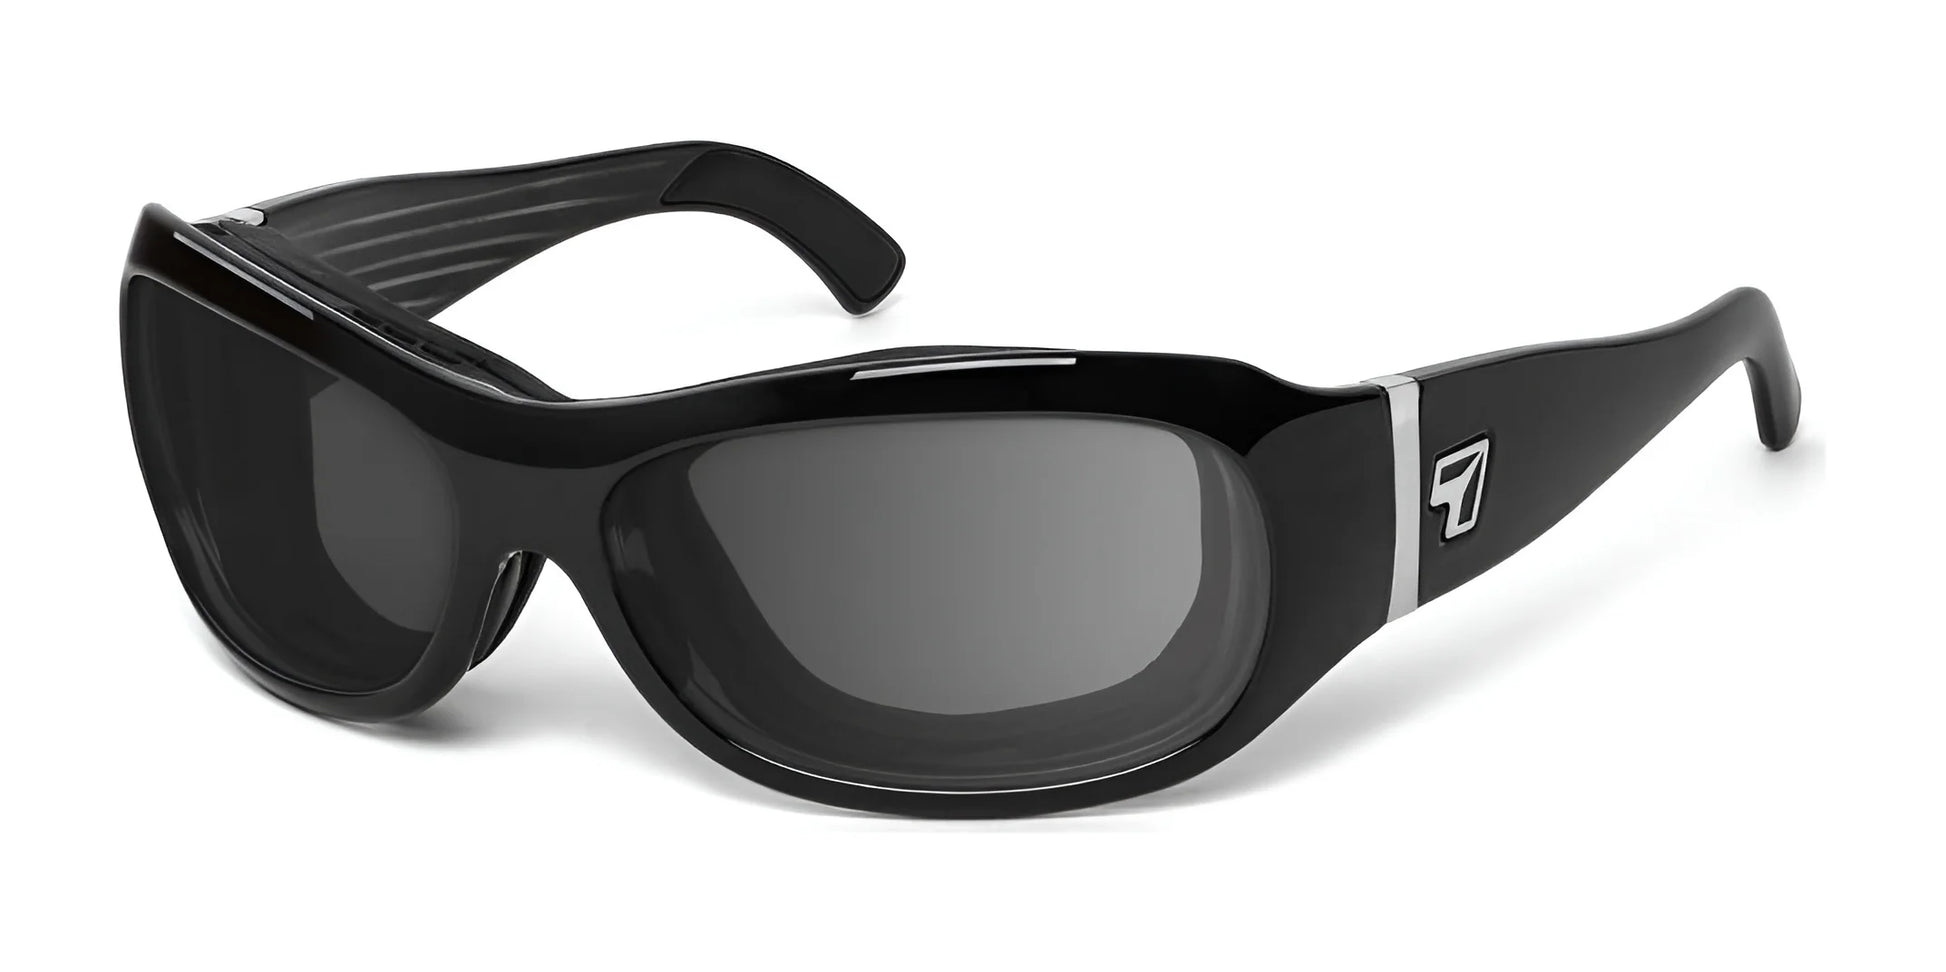 7eye Briza Sunglasses Glossy Black / DARKshift Photochromic - Clr to DARK Gray